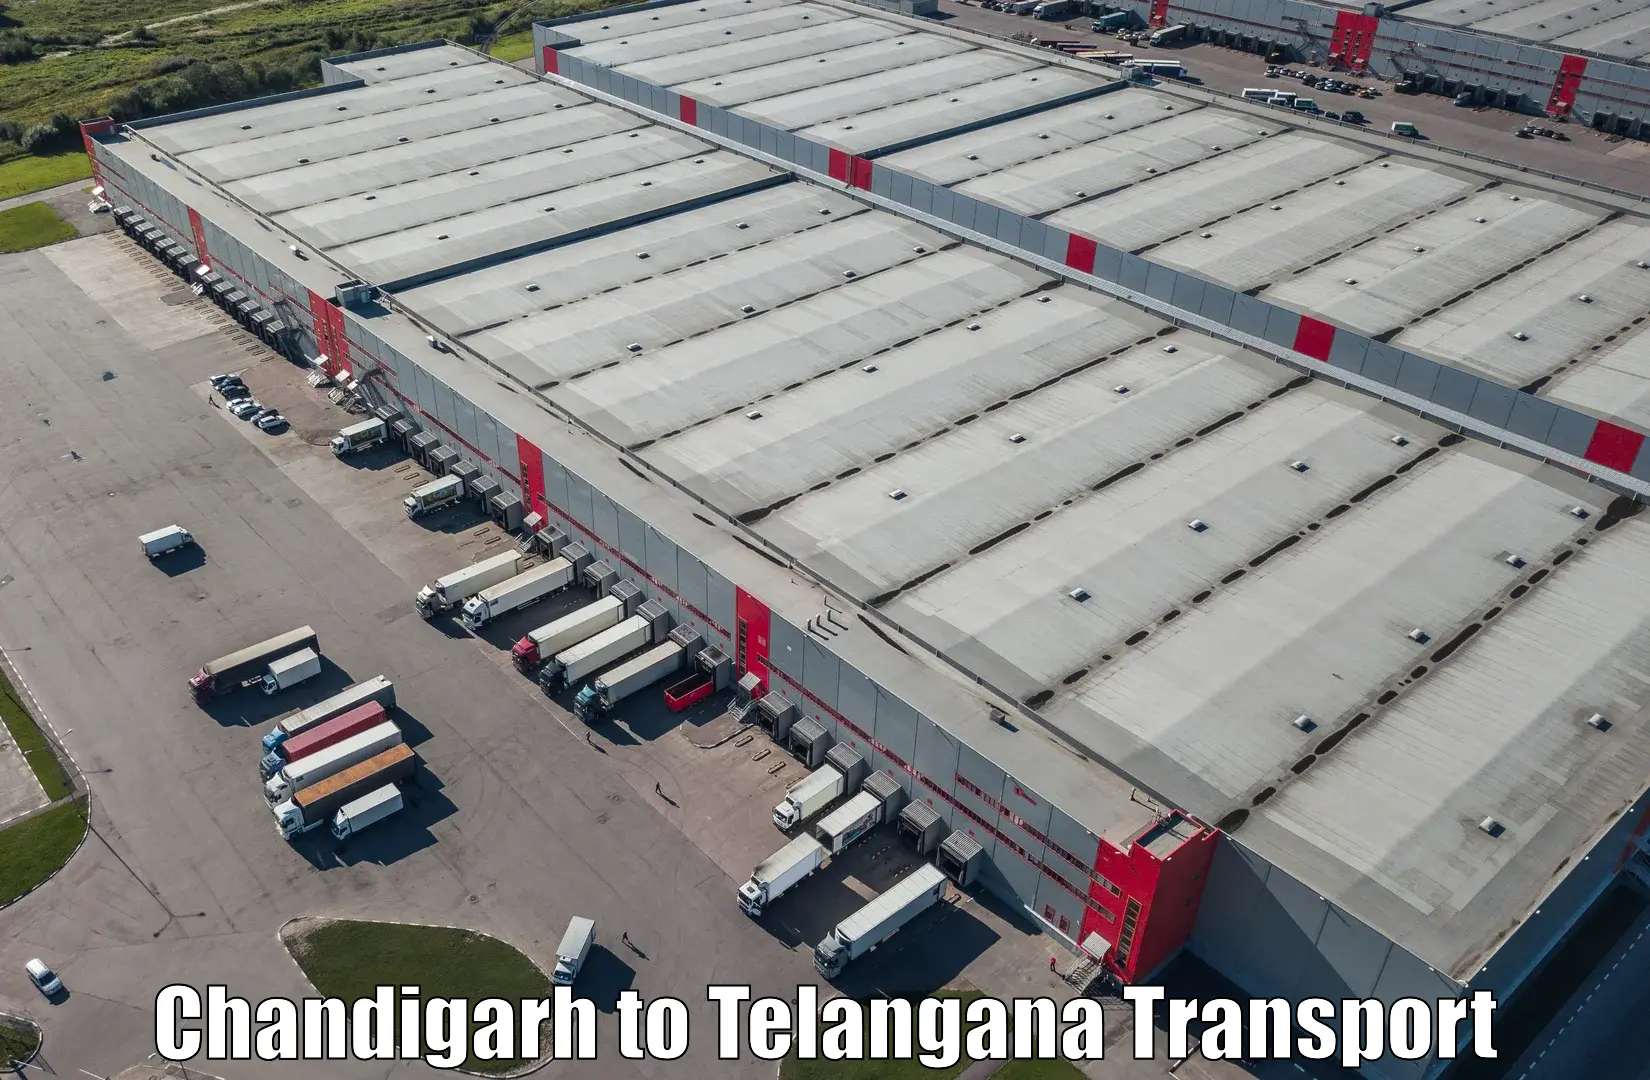 Truck transport companies in India Chandigarh to Nalgonda